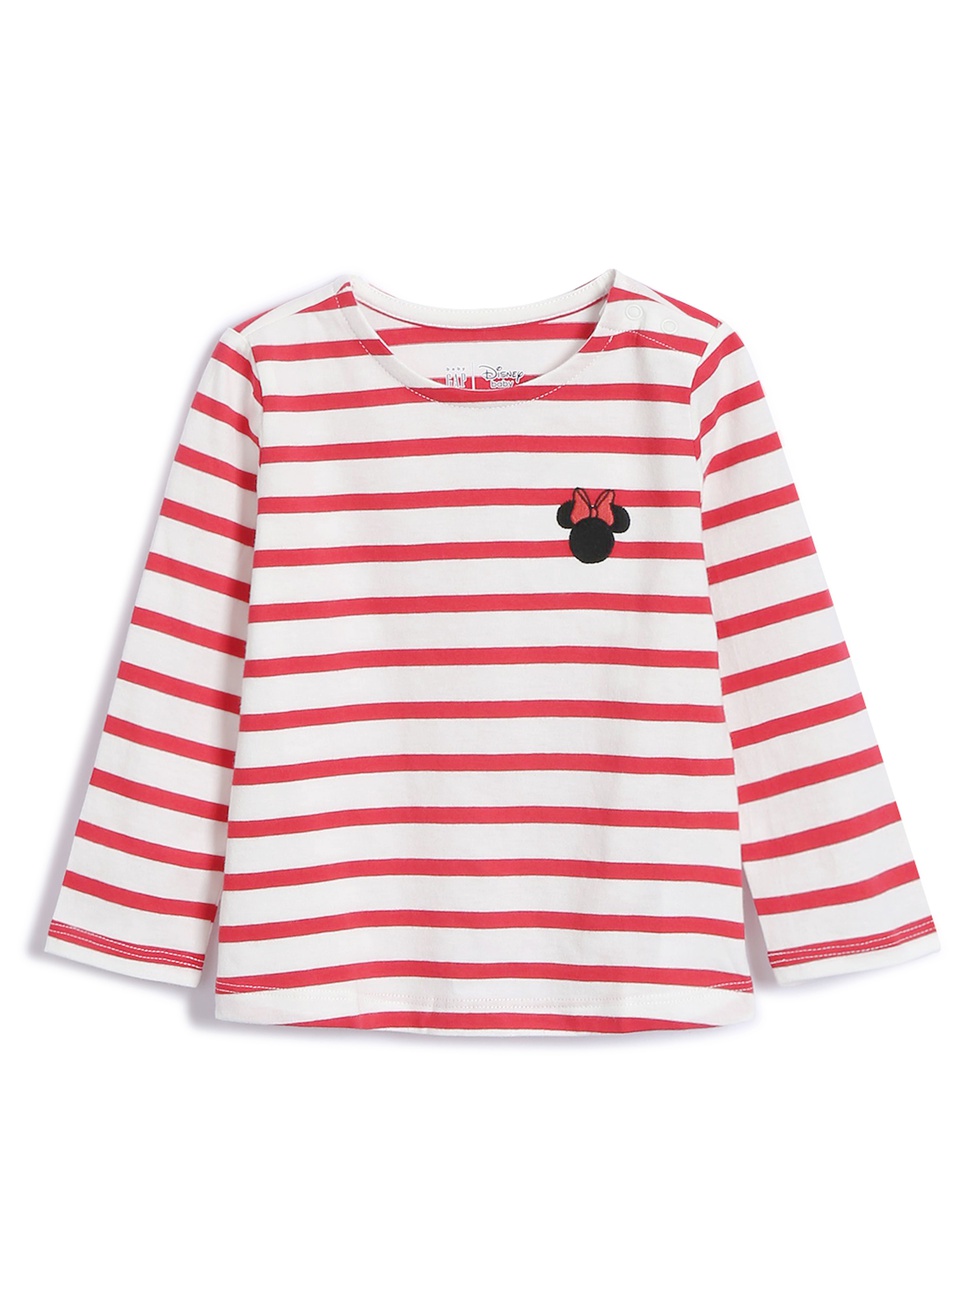 嬰兒裝|Gap x Disney迪士尼聯名 米奇米妮圓領長袖T恤-紅色條紋